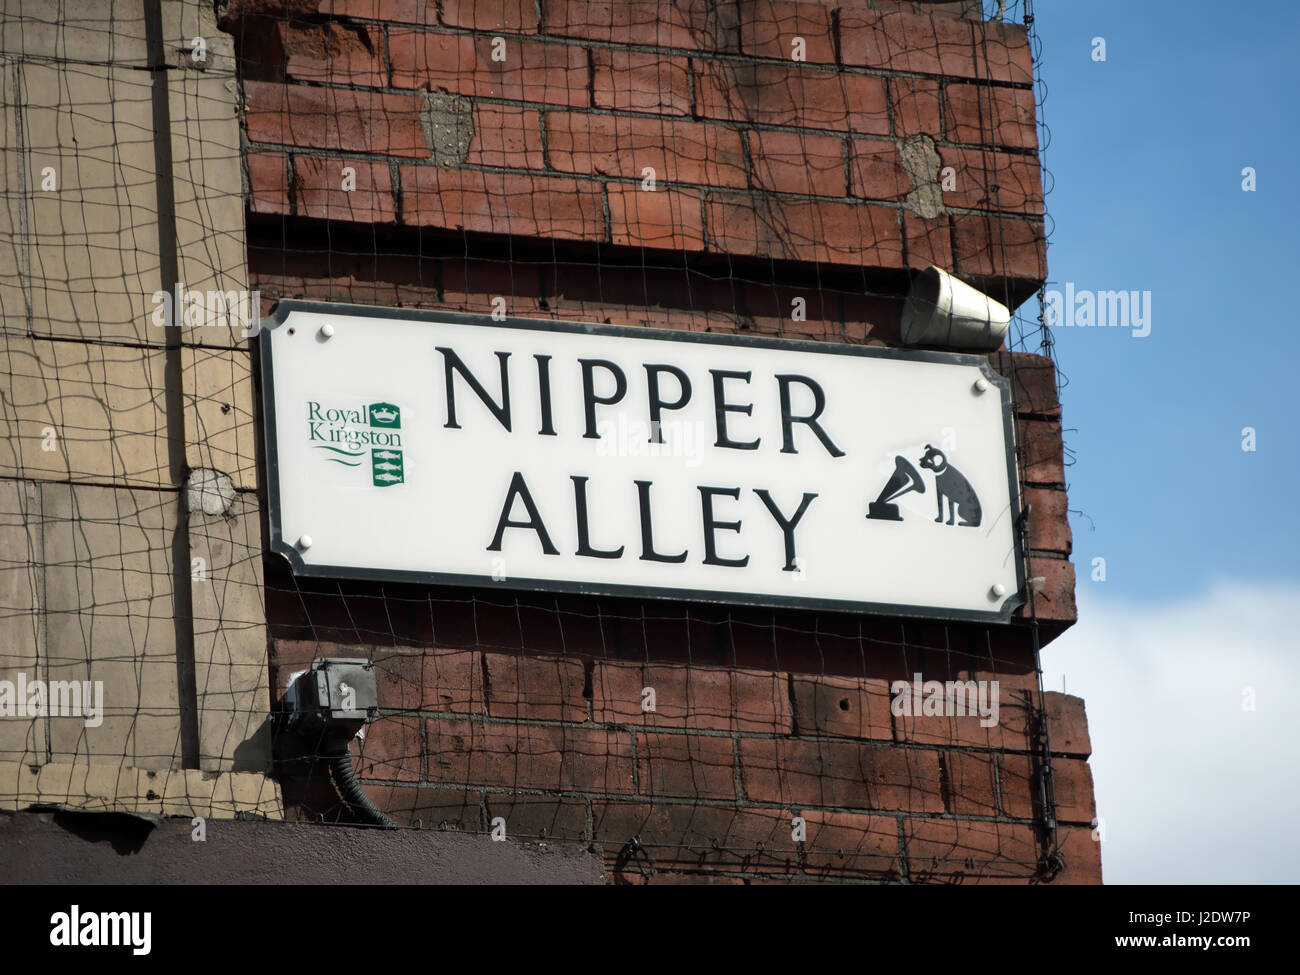 Nom de rue signe pour nipper alley, nommé pour le chien utilisé dans le logo de sa maîtrise de la voix, ou hmv, record company, à Kingston, Surrey, Angleterre Banque D'Images